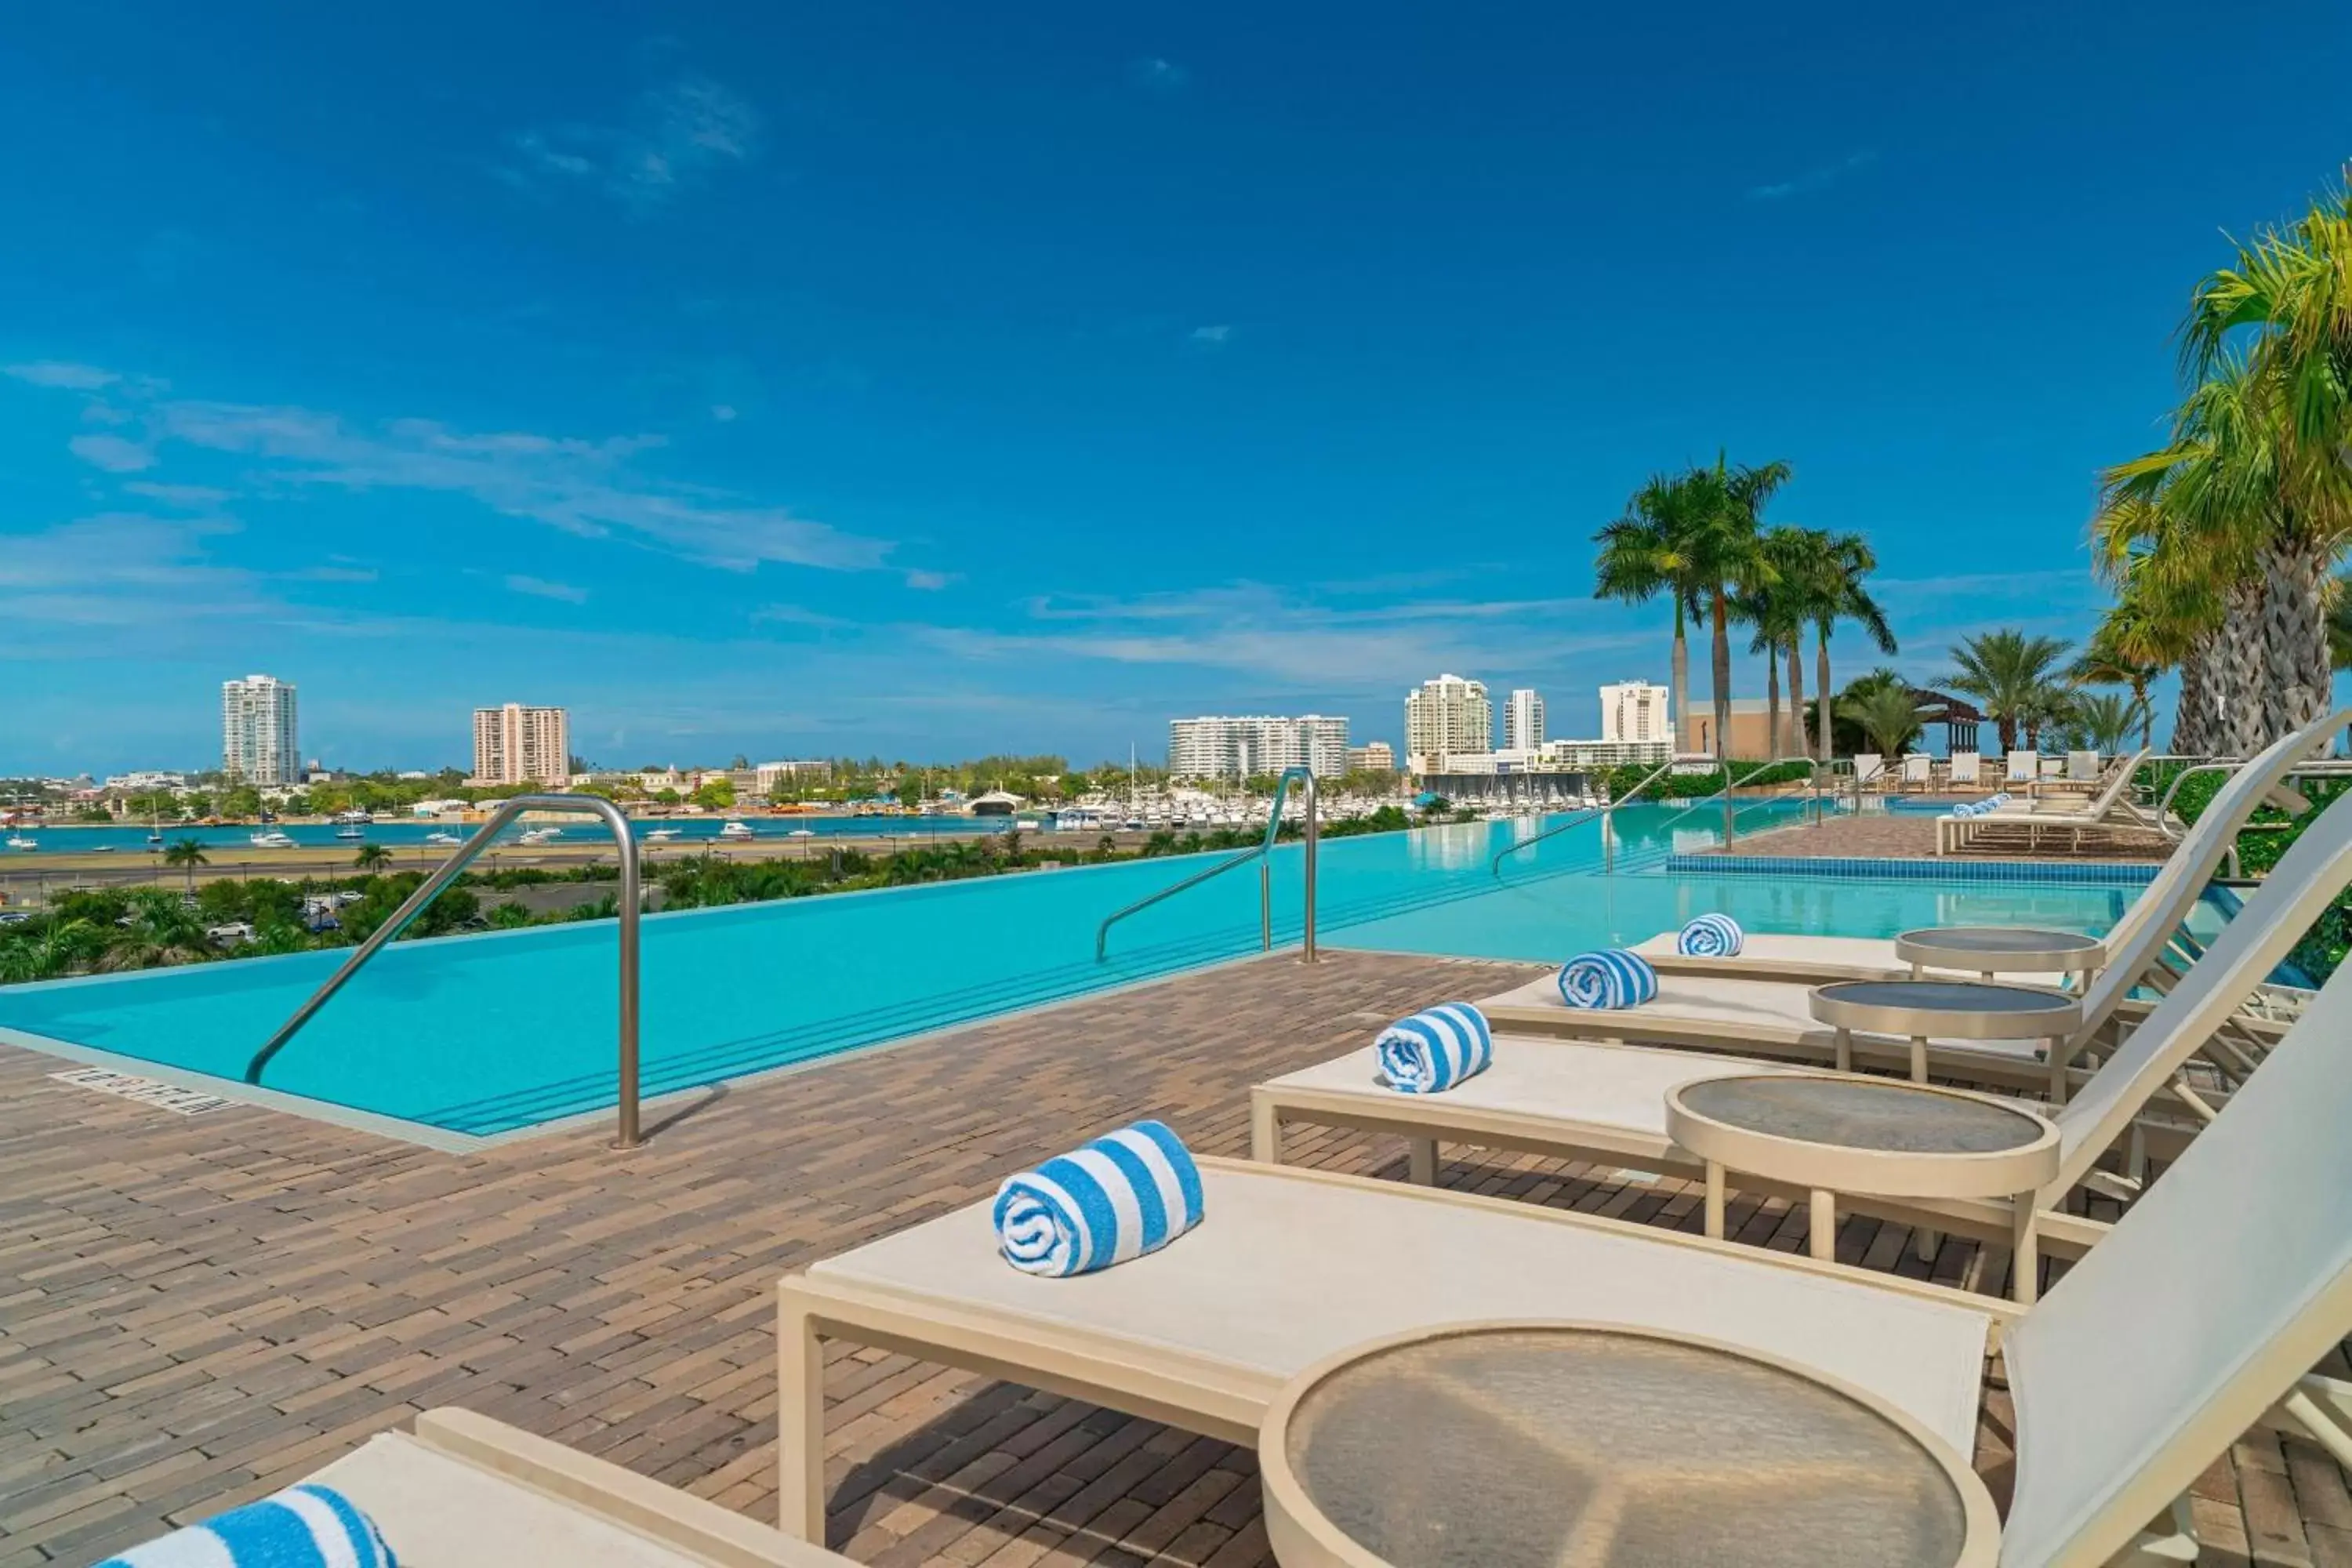 Swimming Pool in Sheraton Puerto Rico Resort & Casino